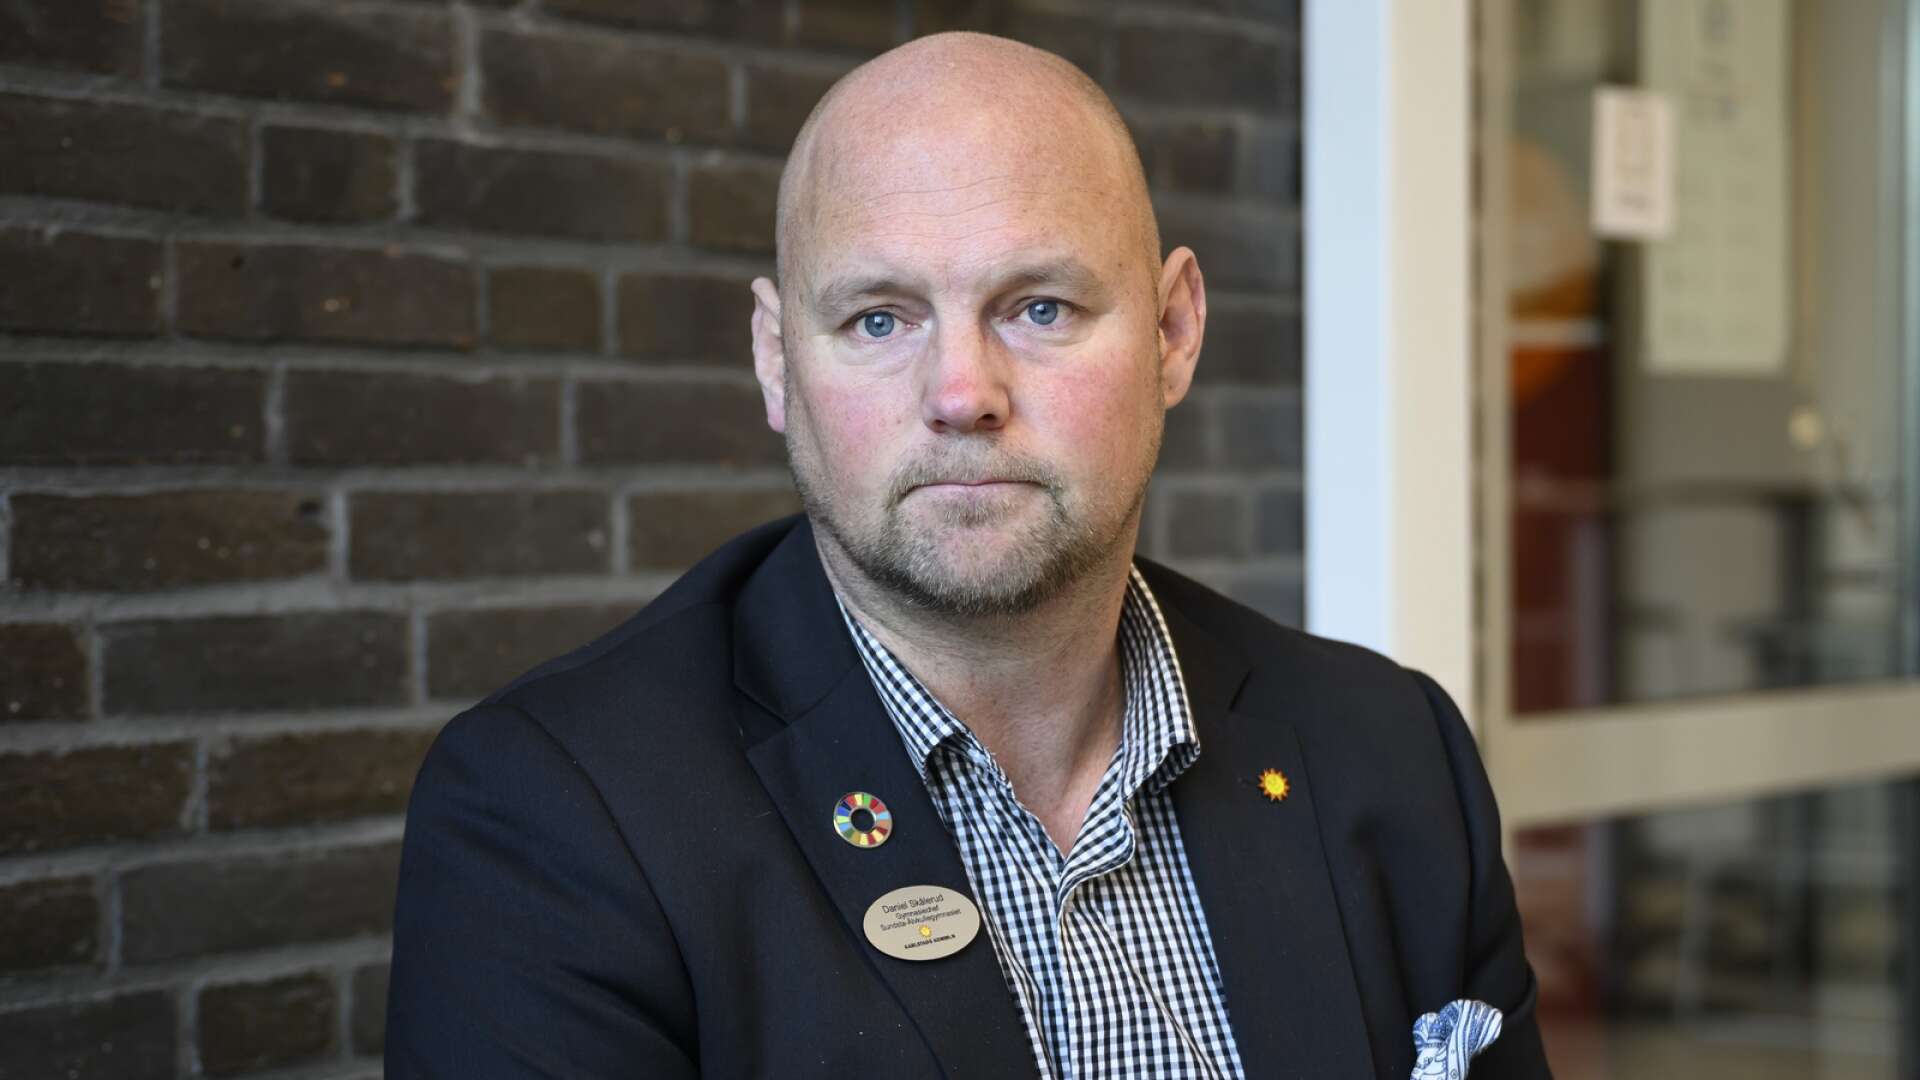 Inbrott på Sundstagymnasiet där det stals ett okänt antal datorer. Daniel Skålerud är Gymnasiechef.